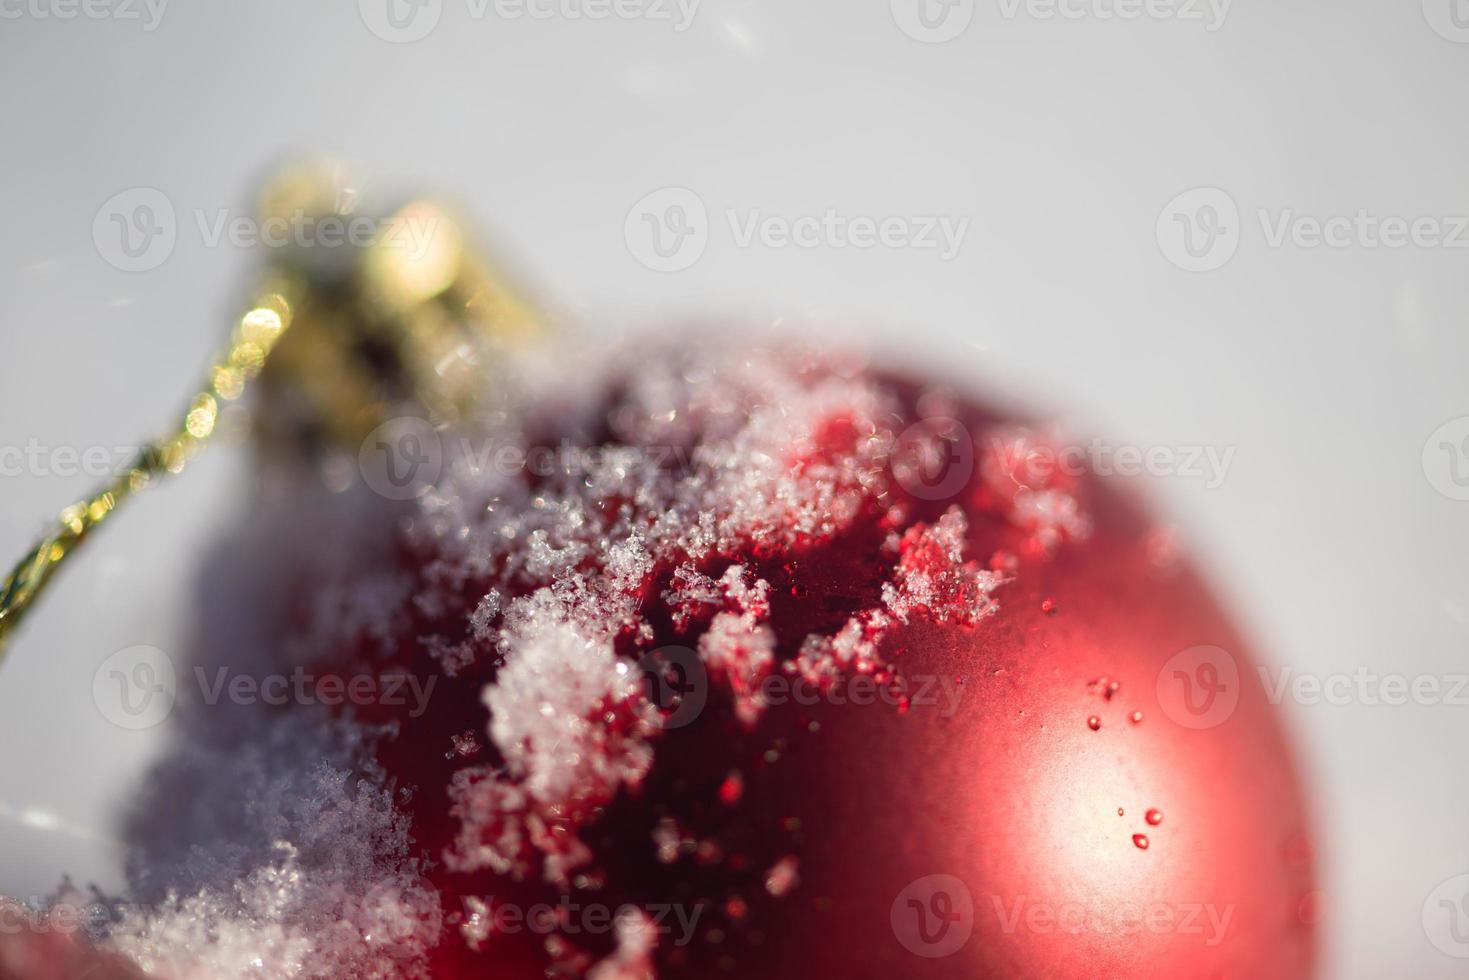 boule de noël rouge dans la neige fraîche photo